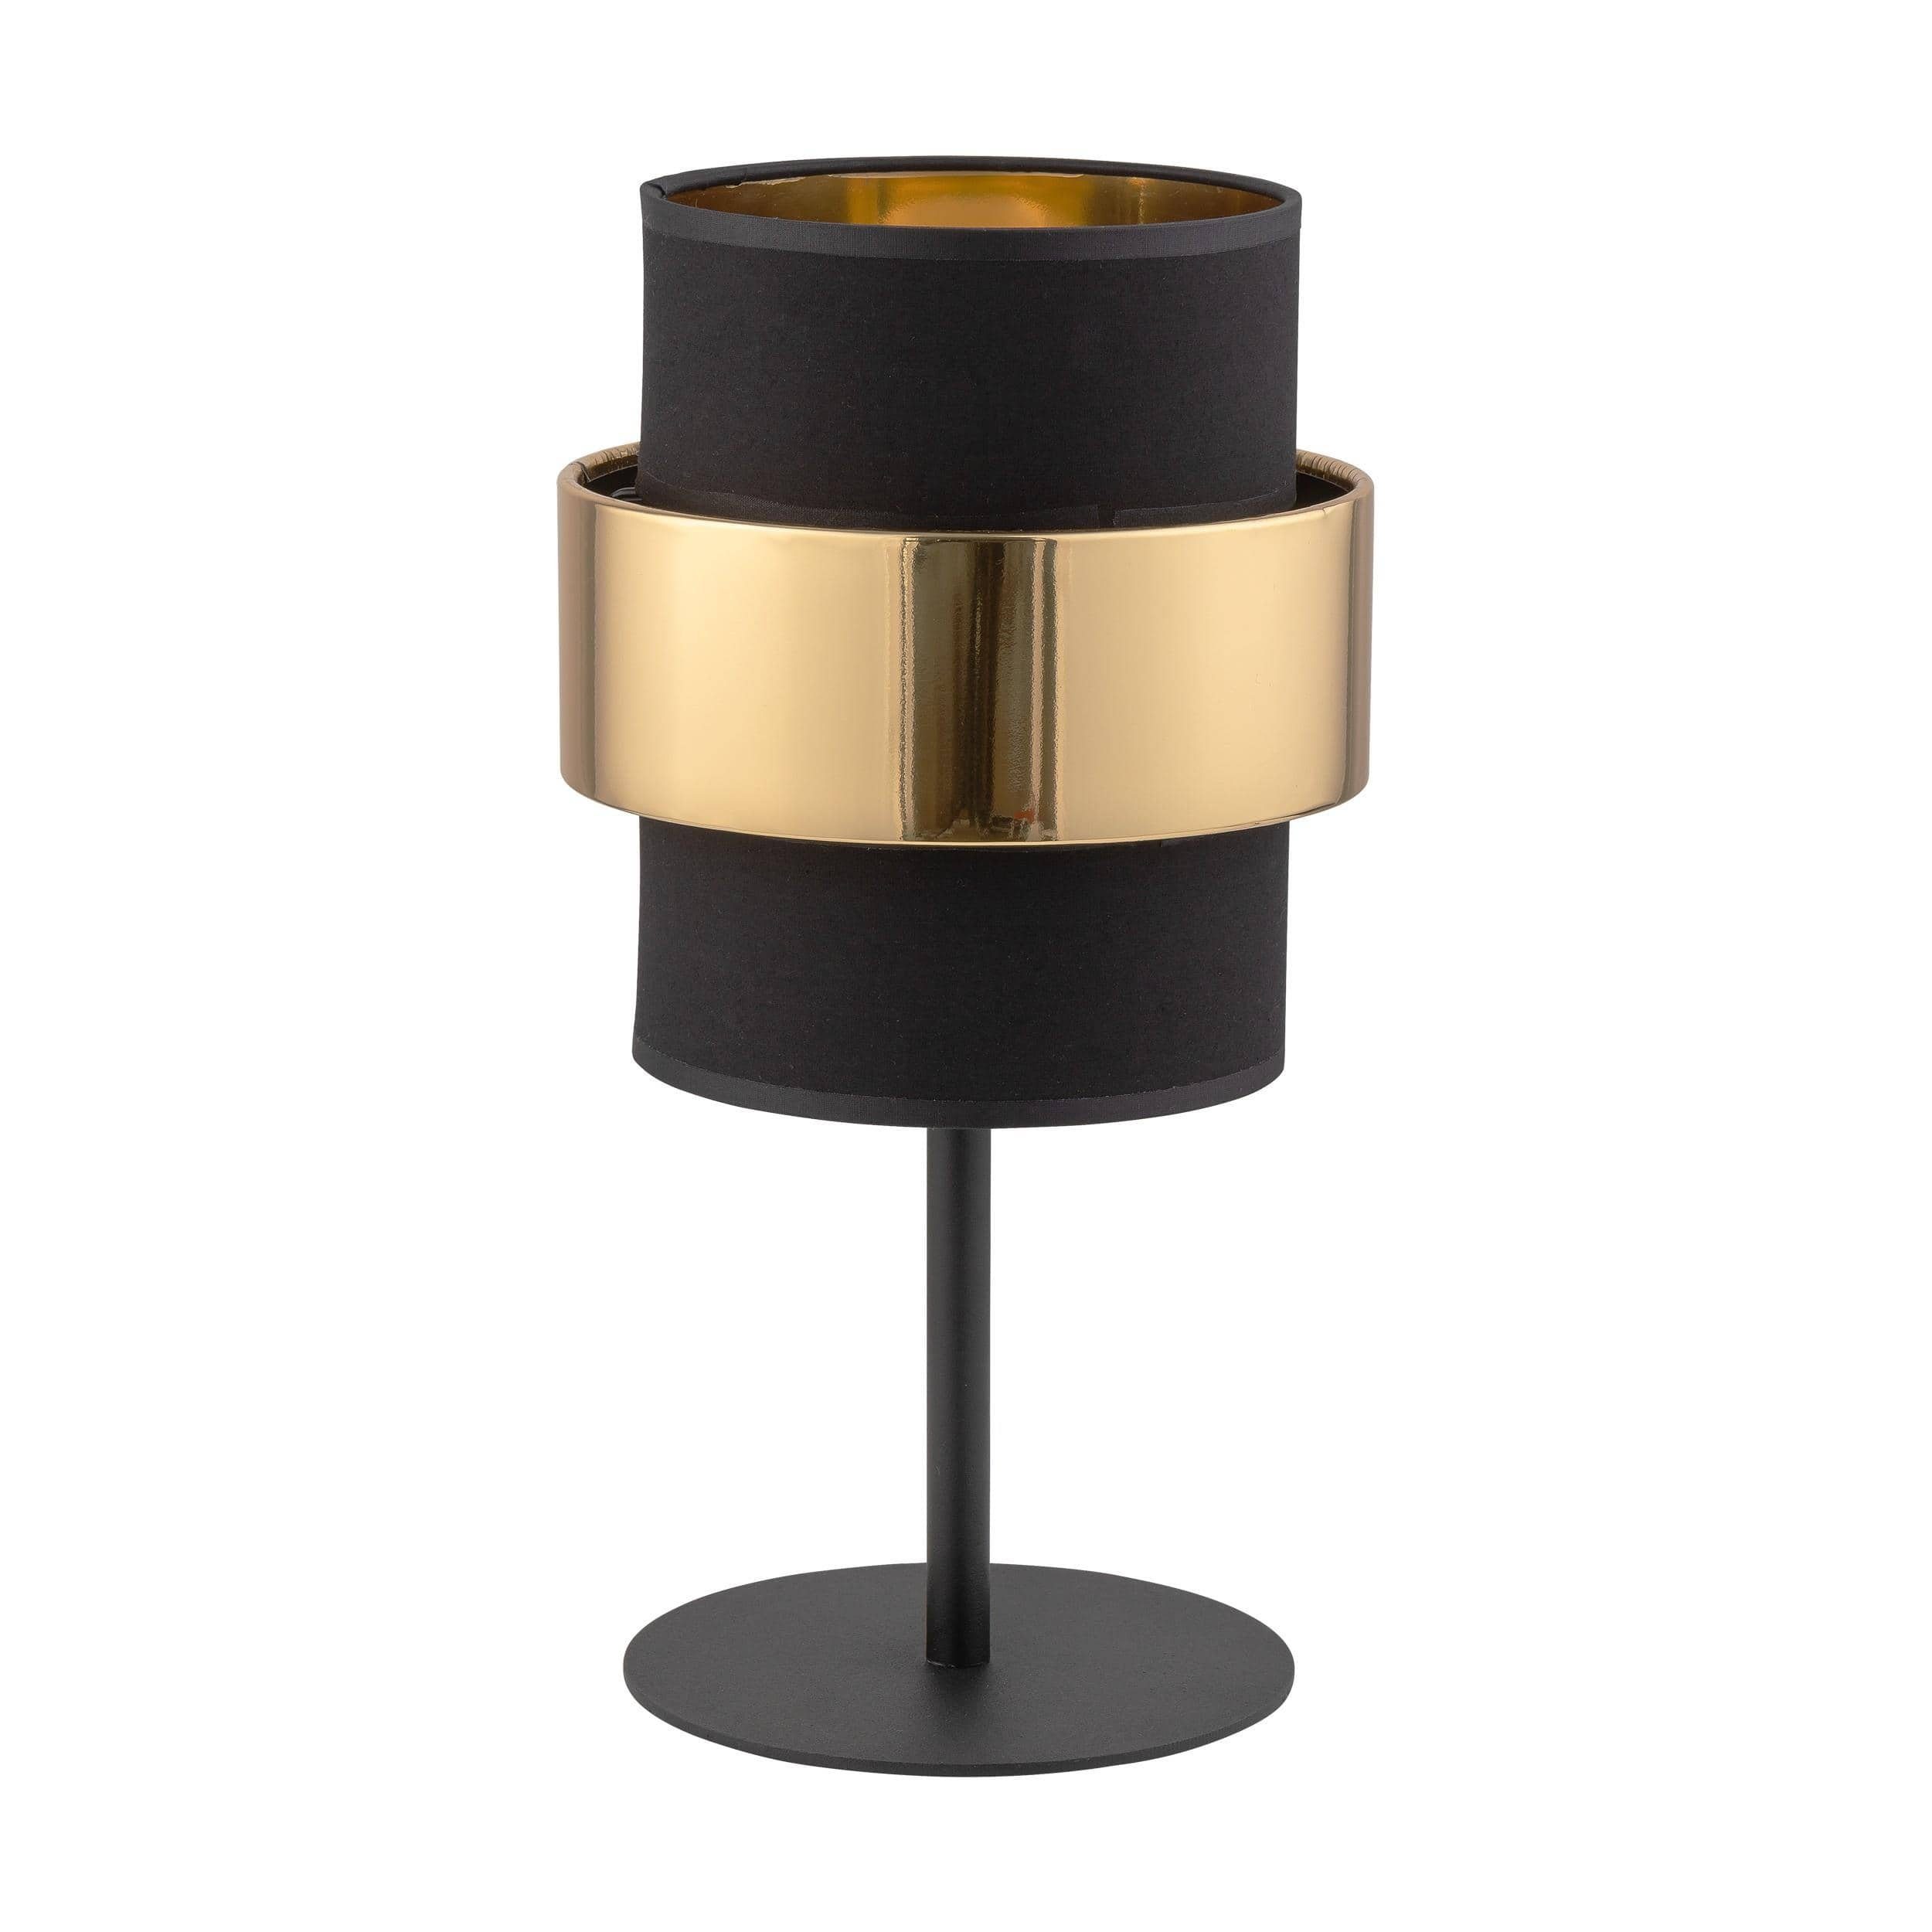 Signature Home Collection Nachttischlampe Tischlampe gold Metall mit Lampenschirm für Nachttisch, ohne Leuchtmittel, warmweiß schwarz - gold